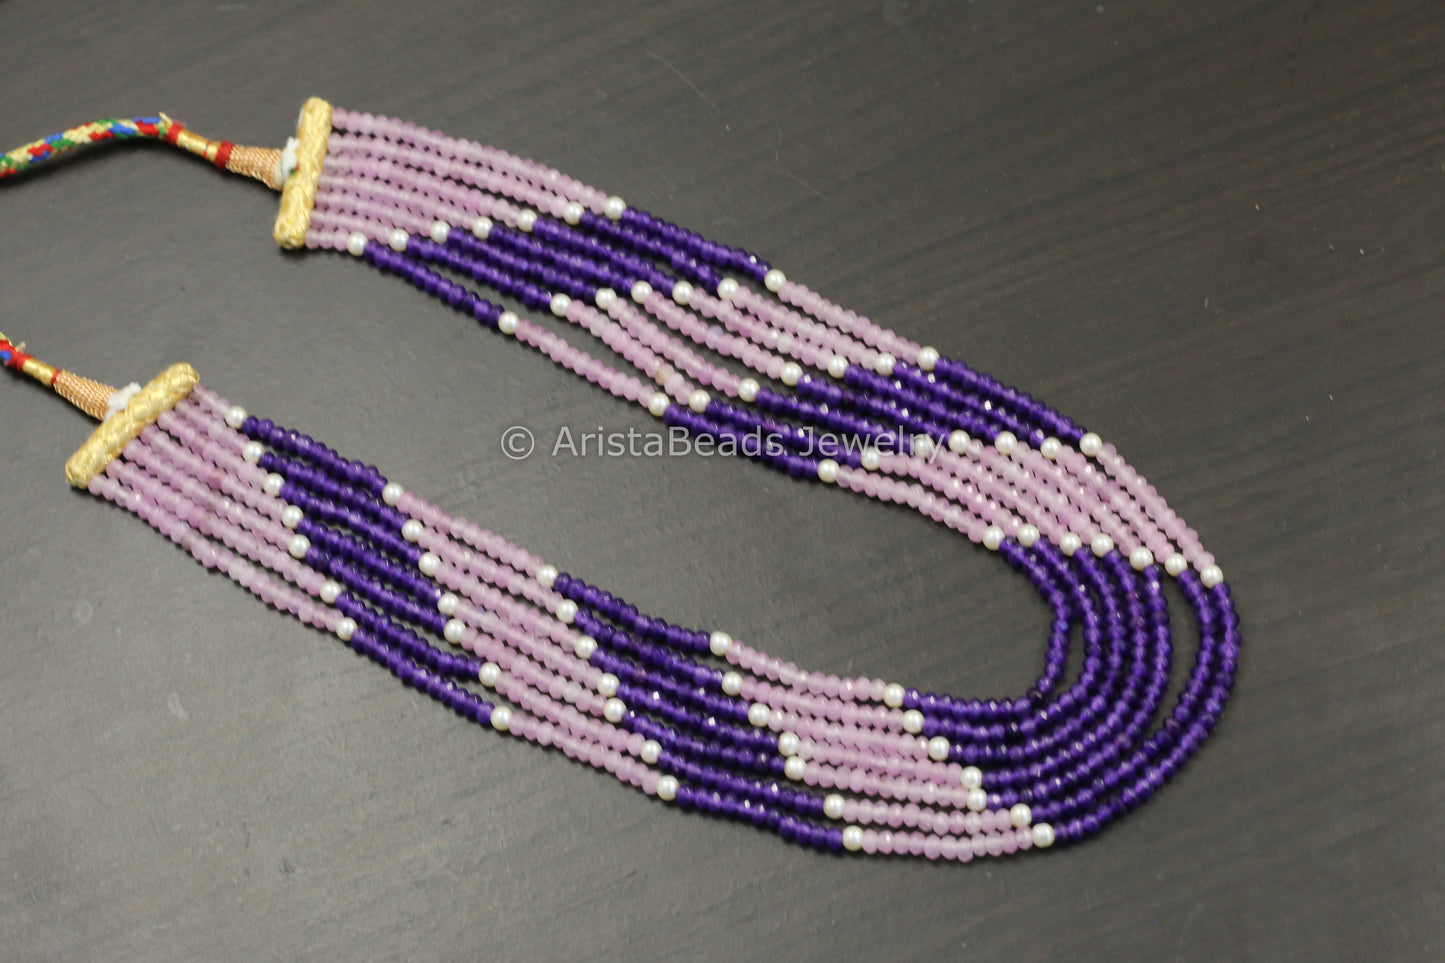 7 Strand Semiprecious Beads Necklace - Color 5